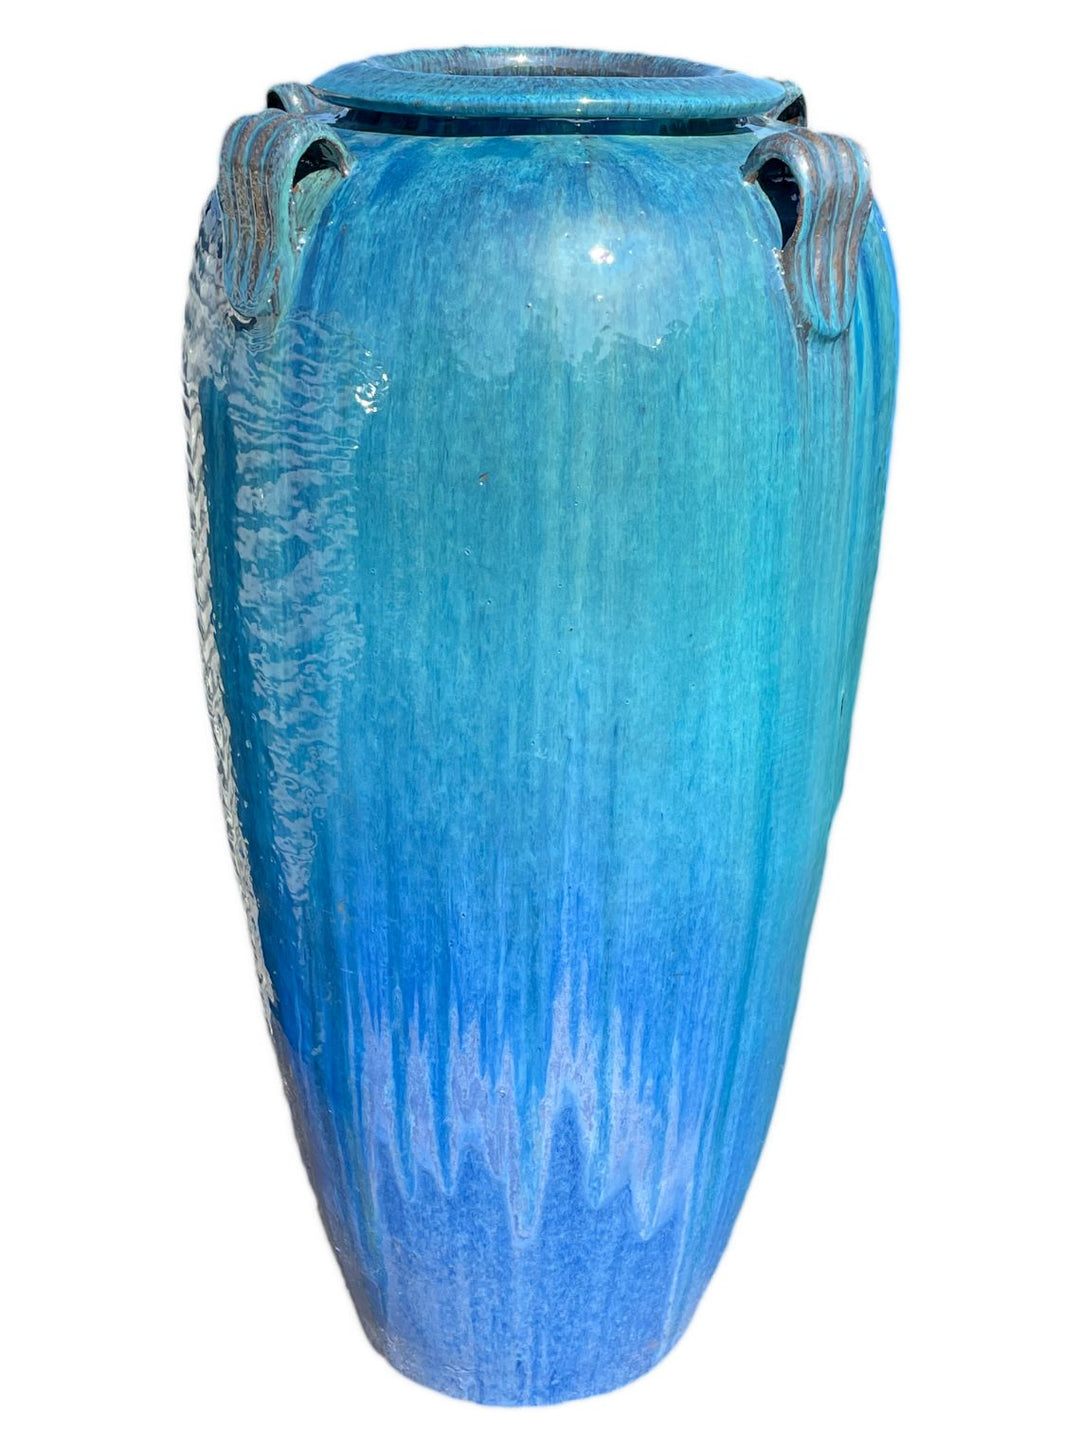 Aqua Blue Ceramic Temple Jar With Handles | Ten Thousand Pots